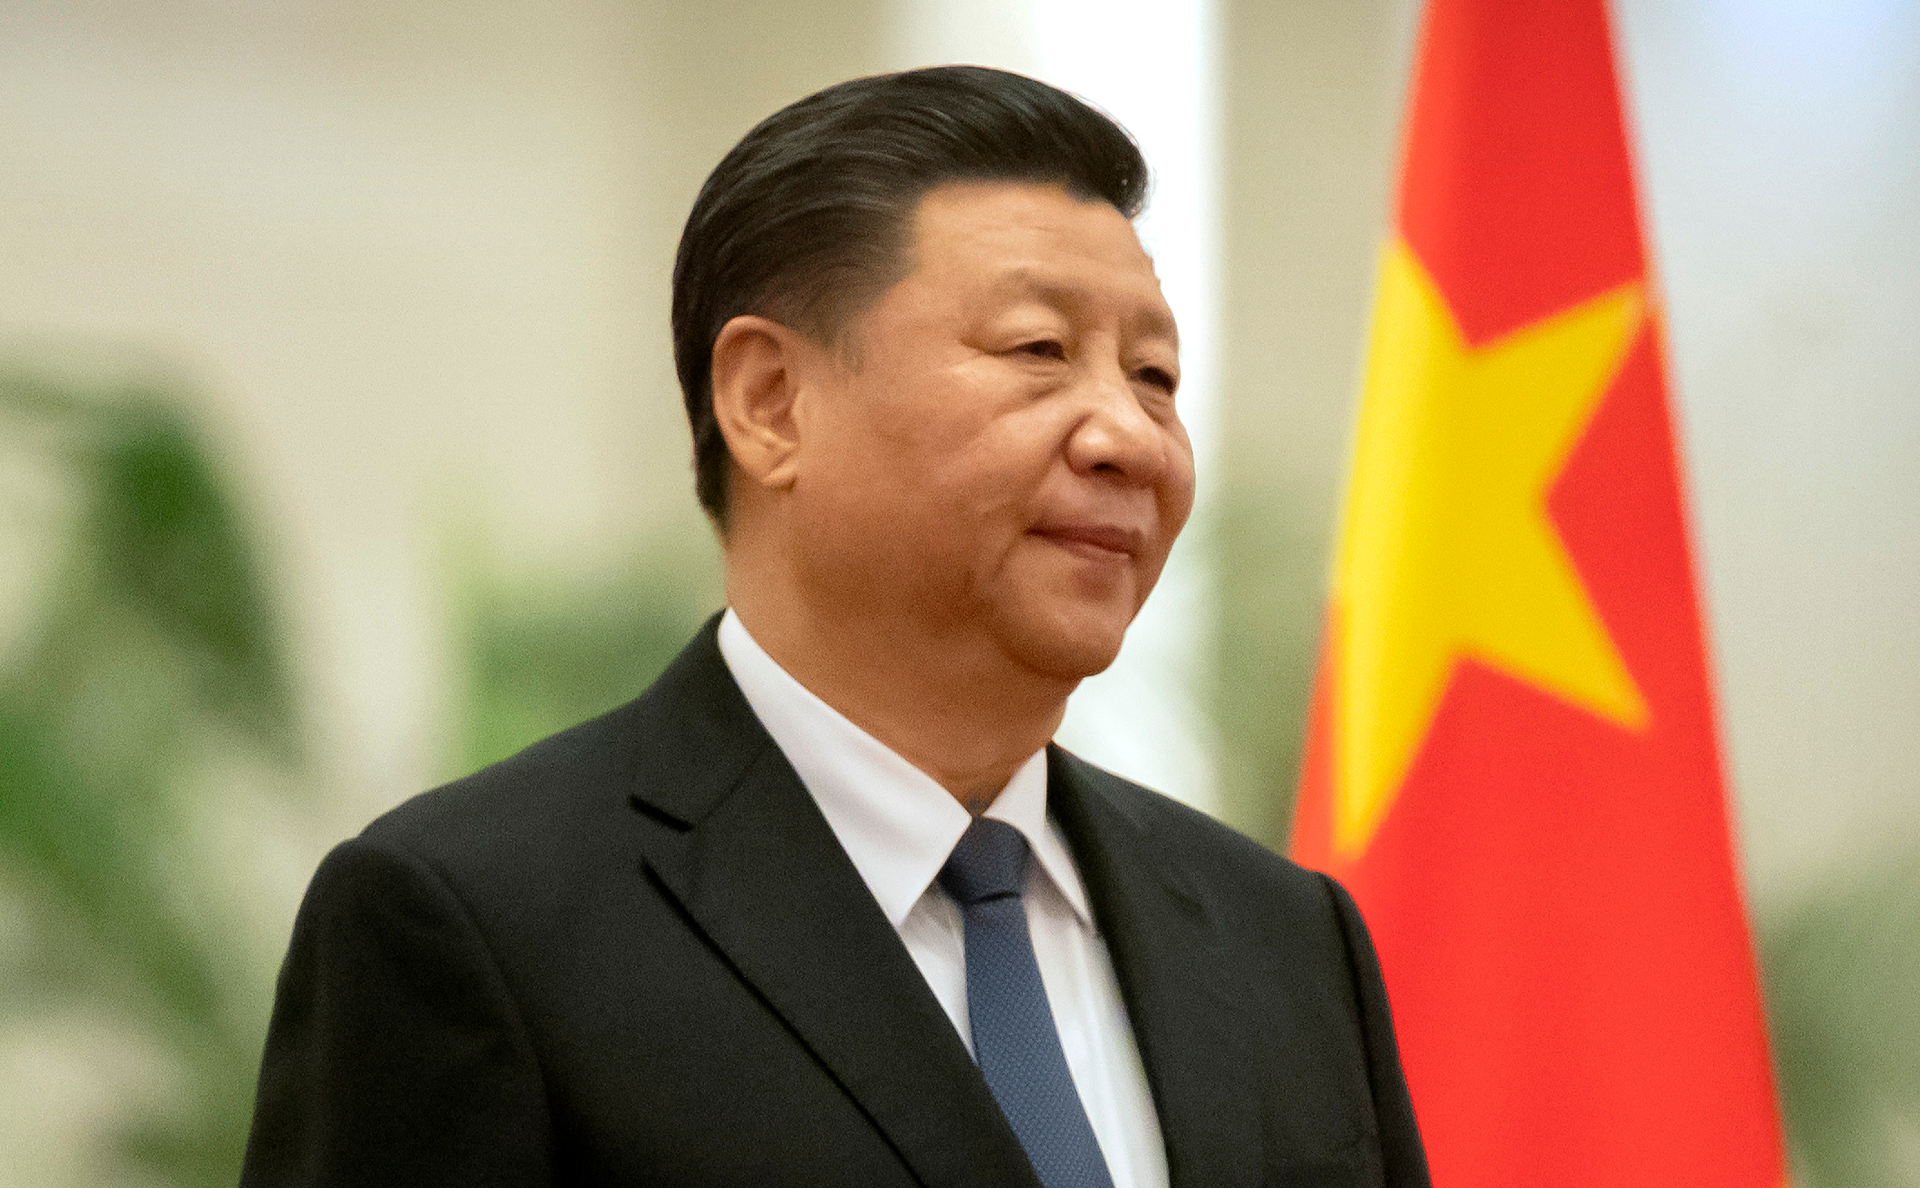 Си Цзиньпин: Китай не пойдет на компромисс в тайваньском вопросе